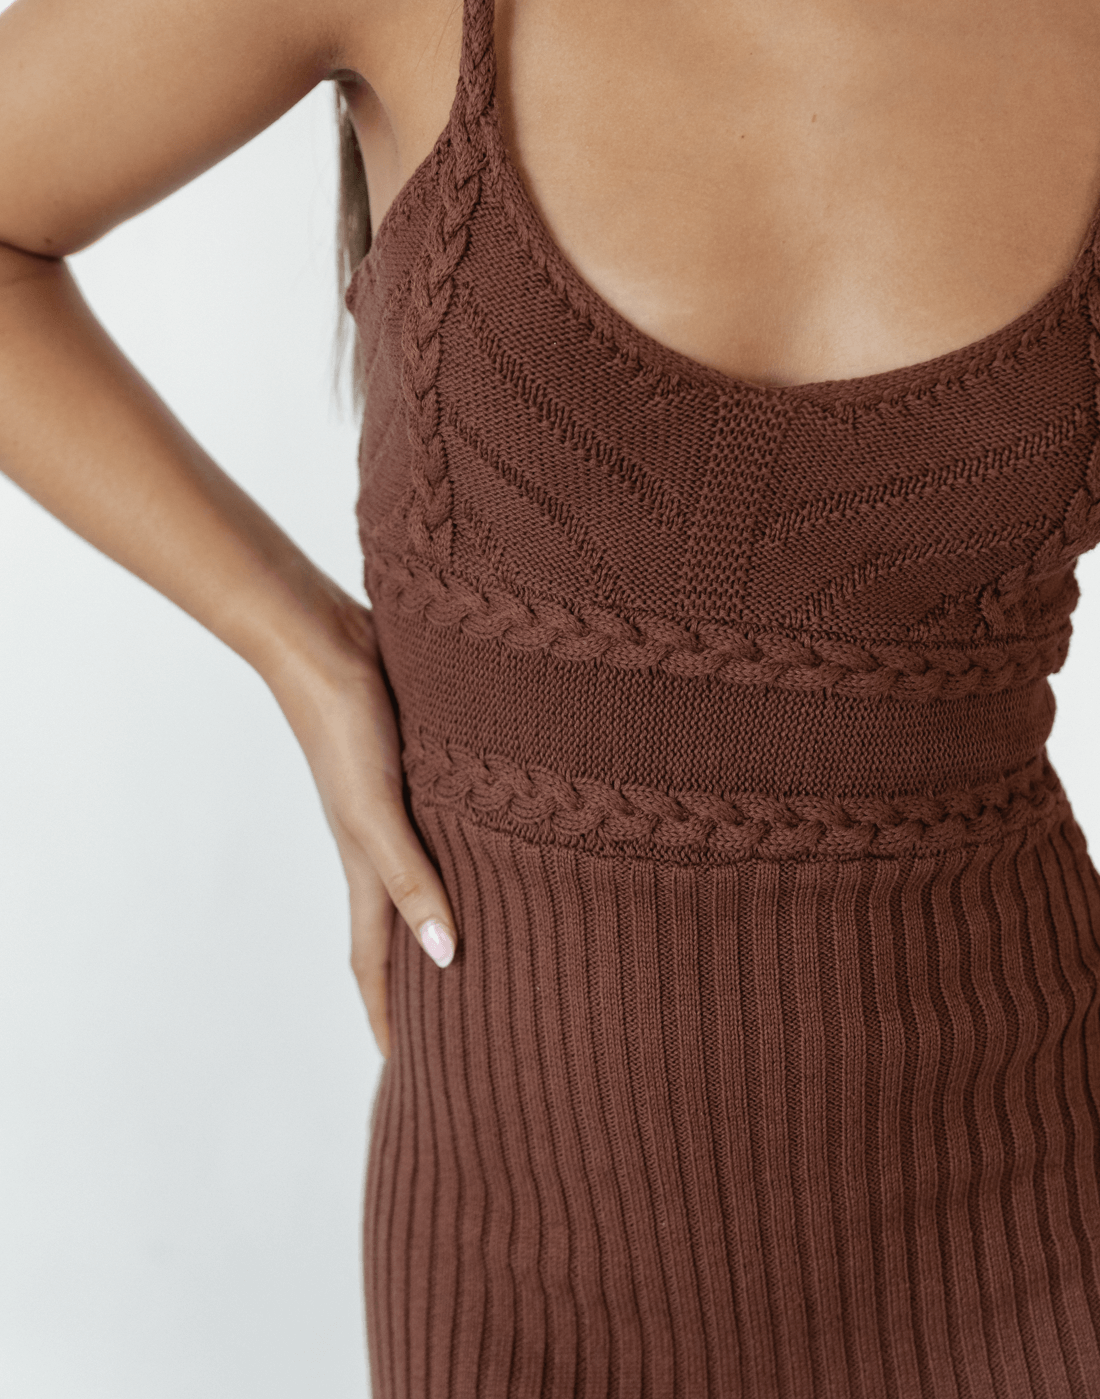 Cameron Knit Midi Dress (Brown) - Spagetthi Strap Knit Dress - Women's Dress - Charcoal Clothing